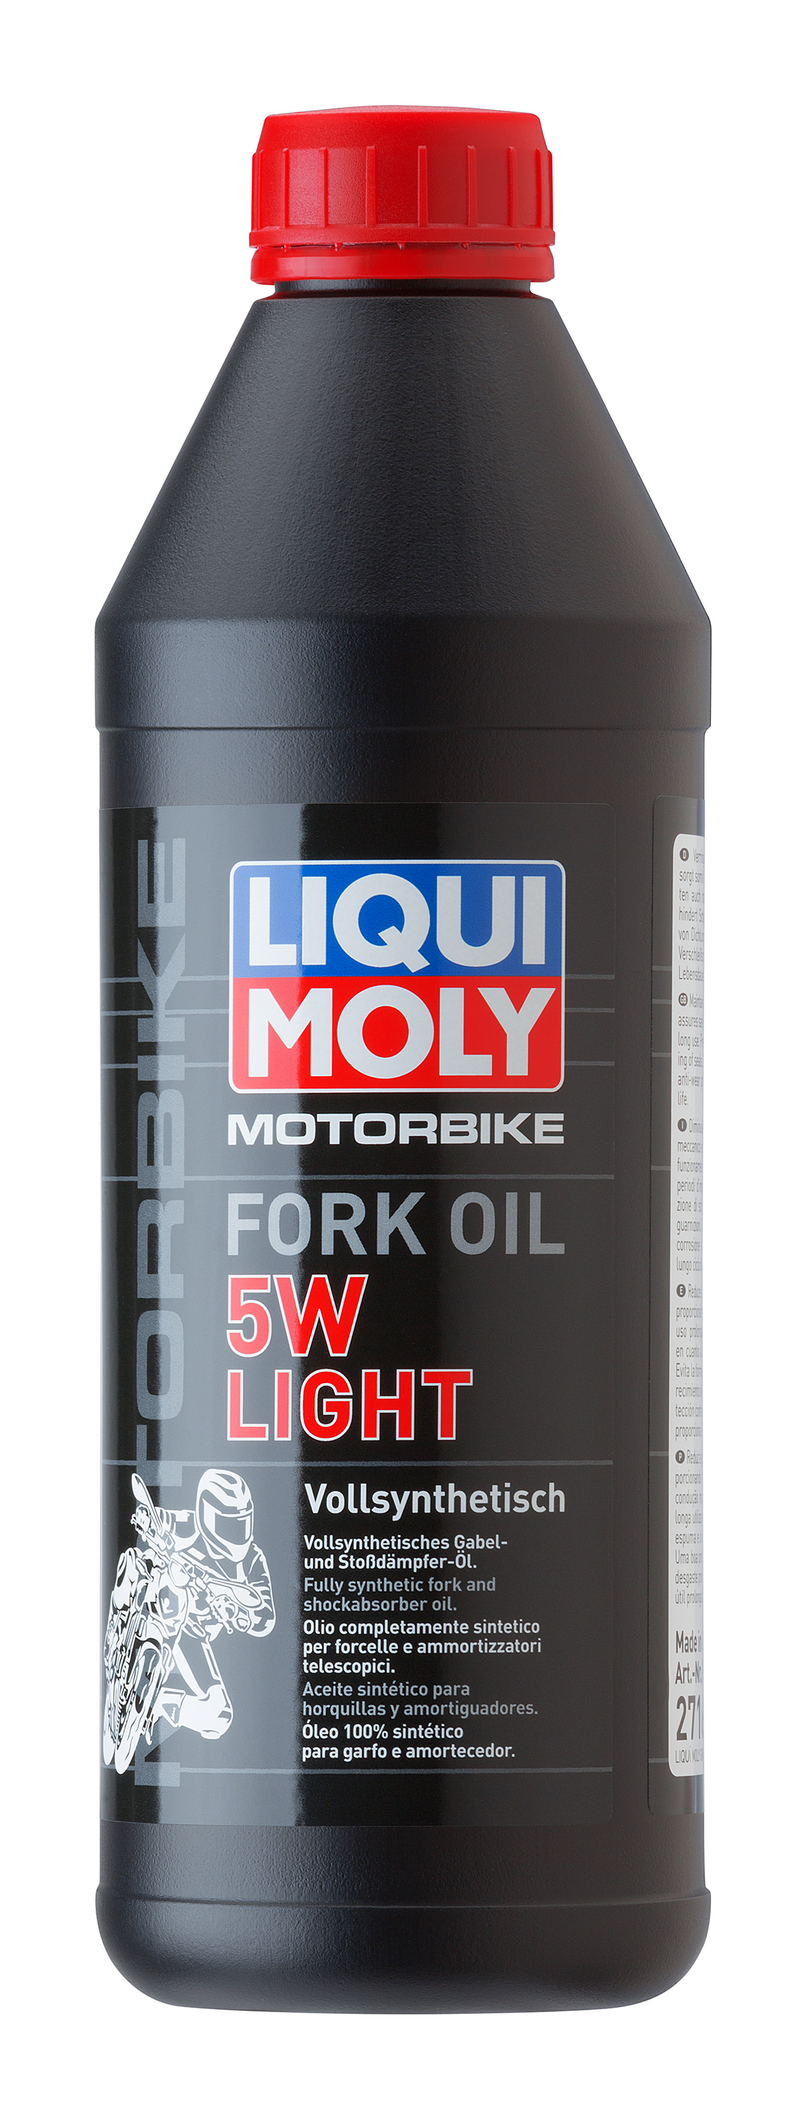 Motorbike Fork Oil 5W light (1 L) Liqui Moly